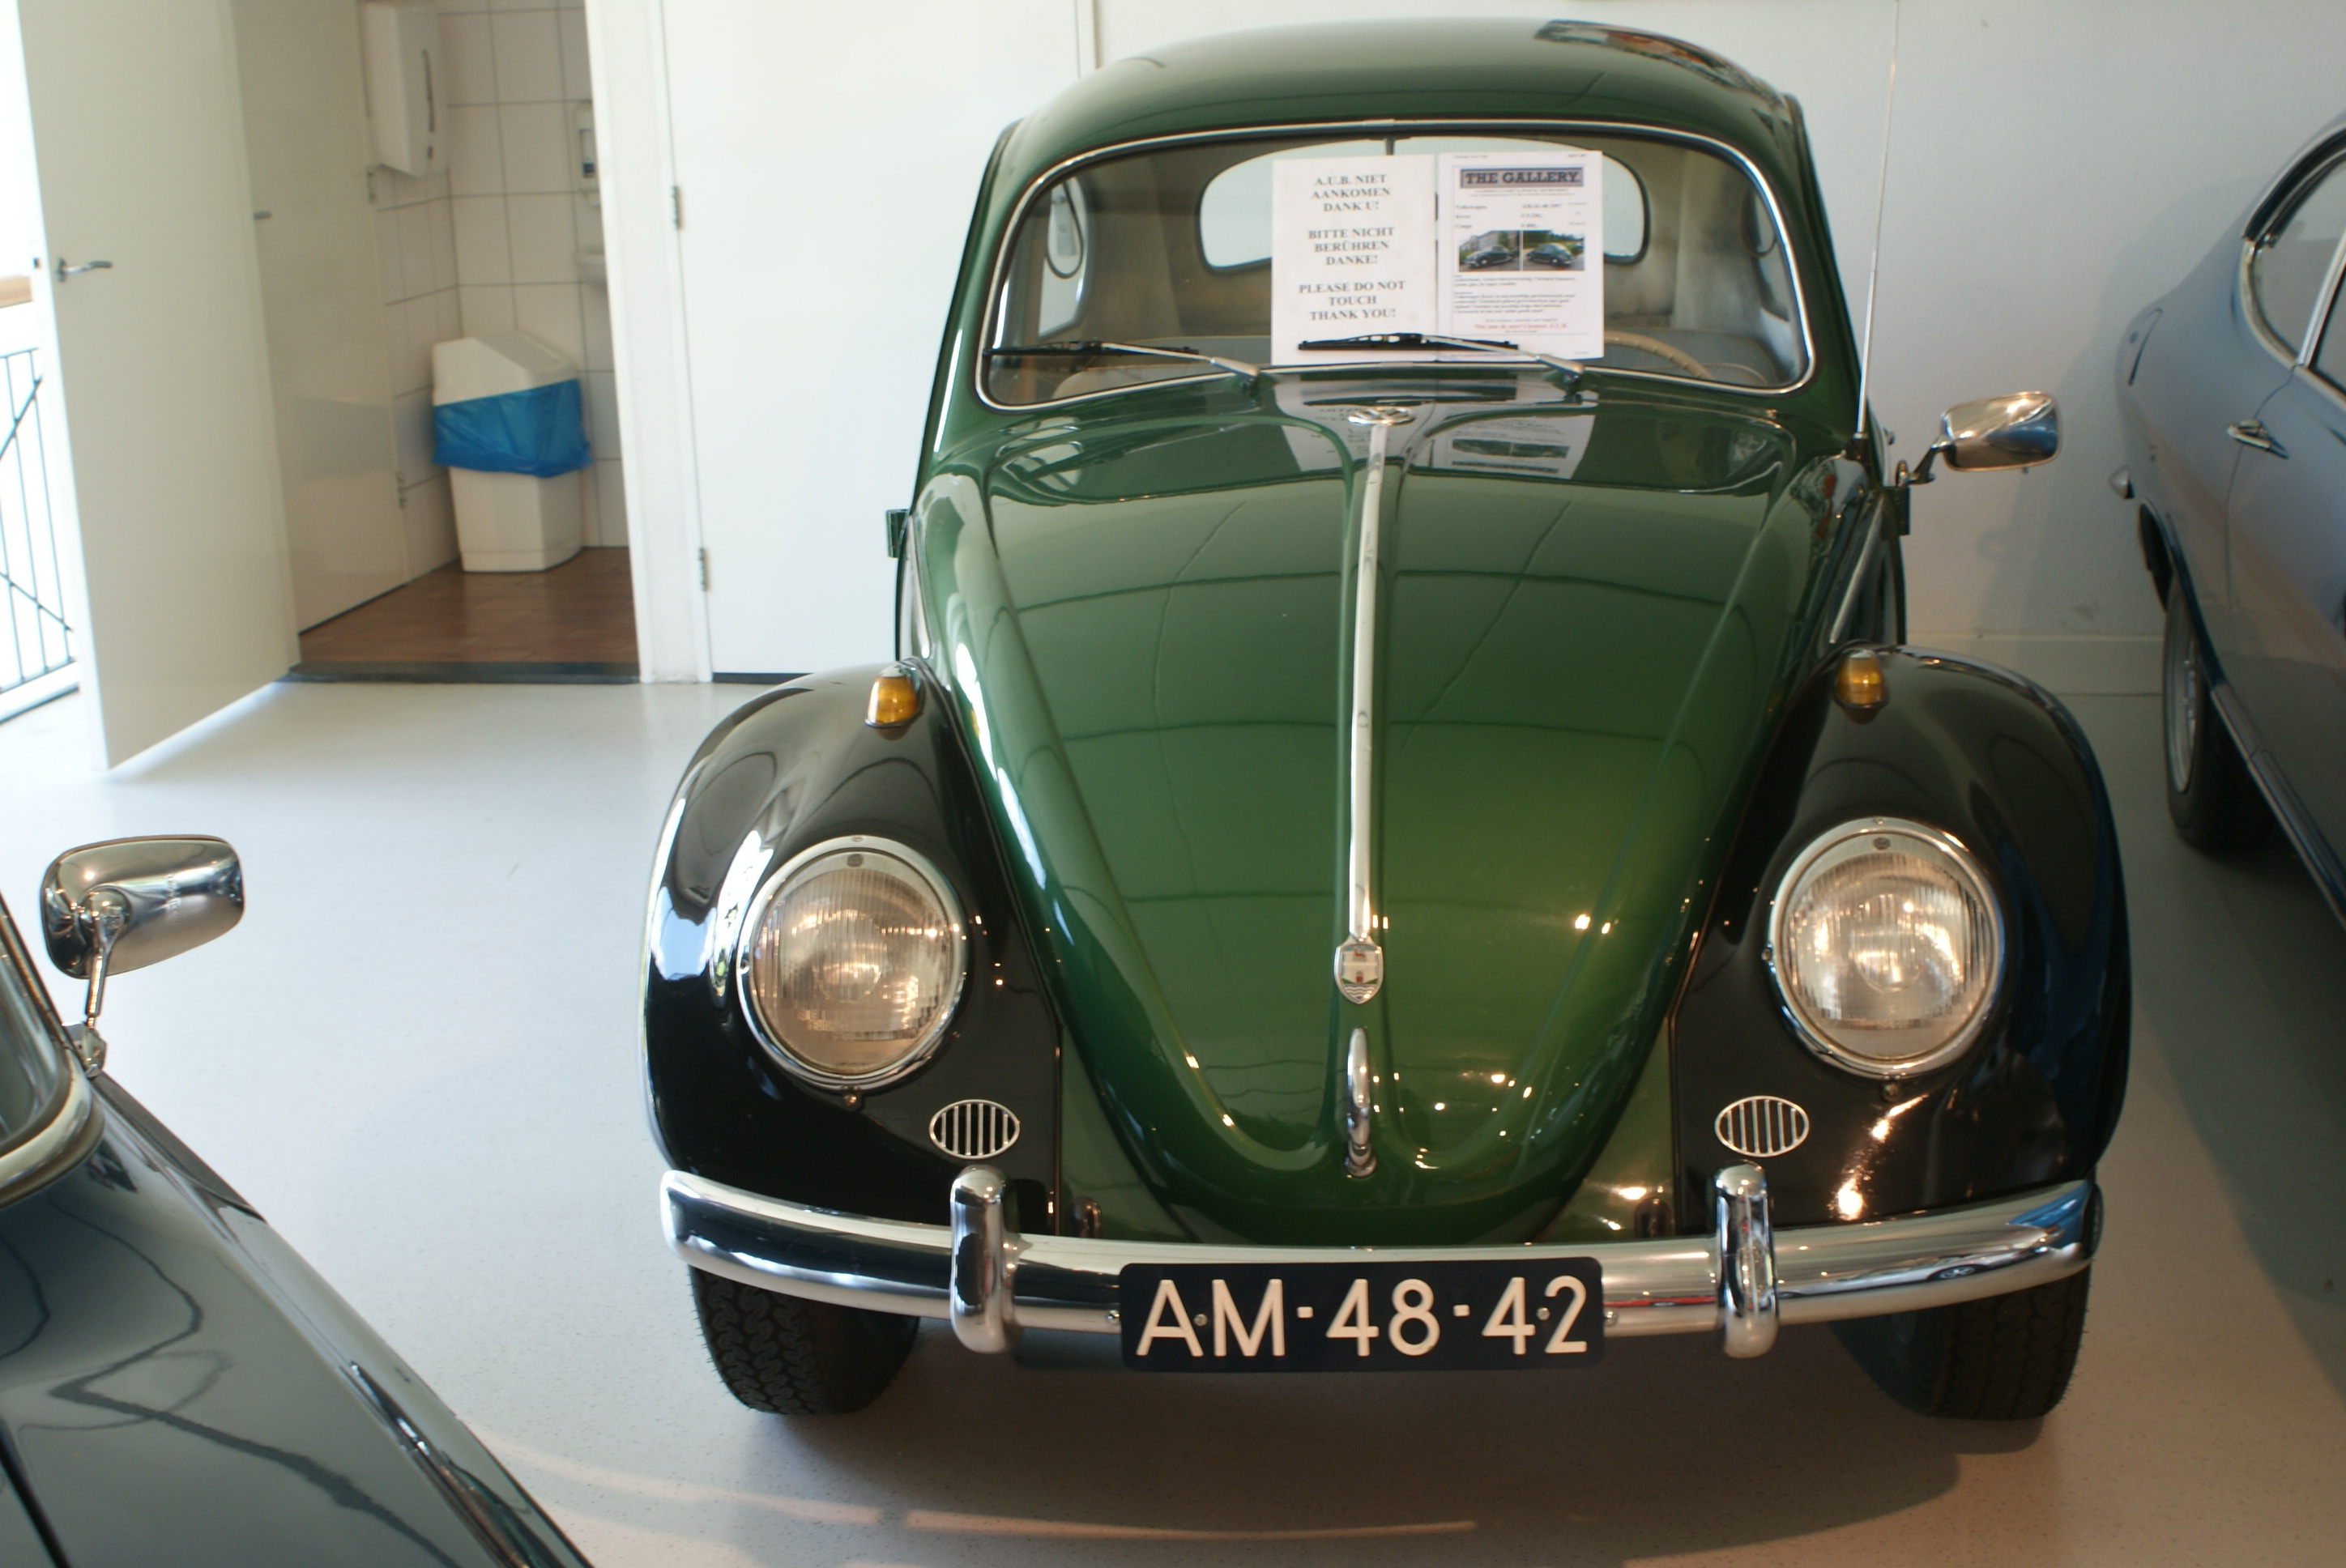 1968 Volkswagen Beetle Green Reading Industrial Wiring